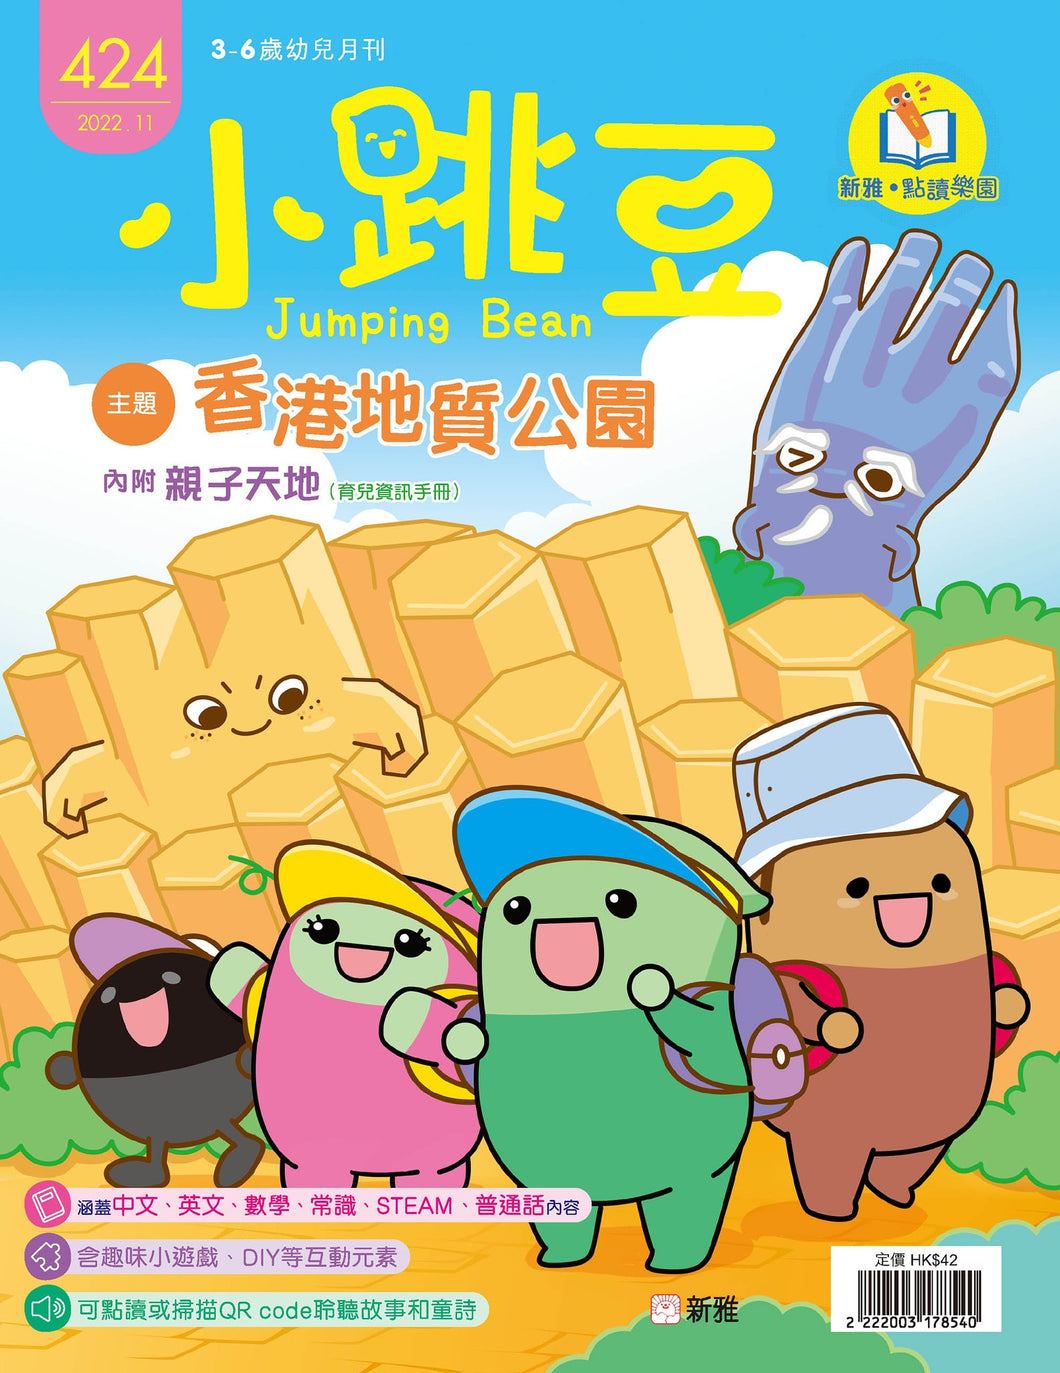 [Sunya Reading Pen] Little Jumping Bean Magazine Issue #424: Hong Kong Geopark • 小跳豆幼兒雜誌 424期 香港地質公園